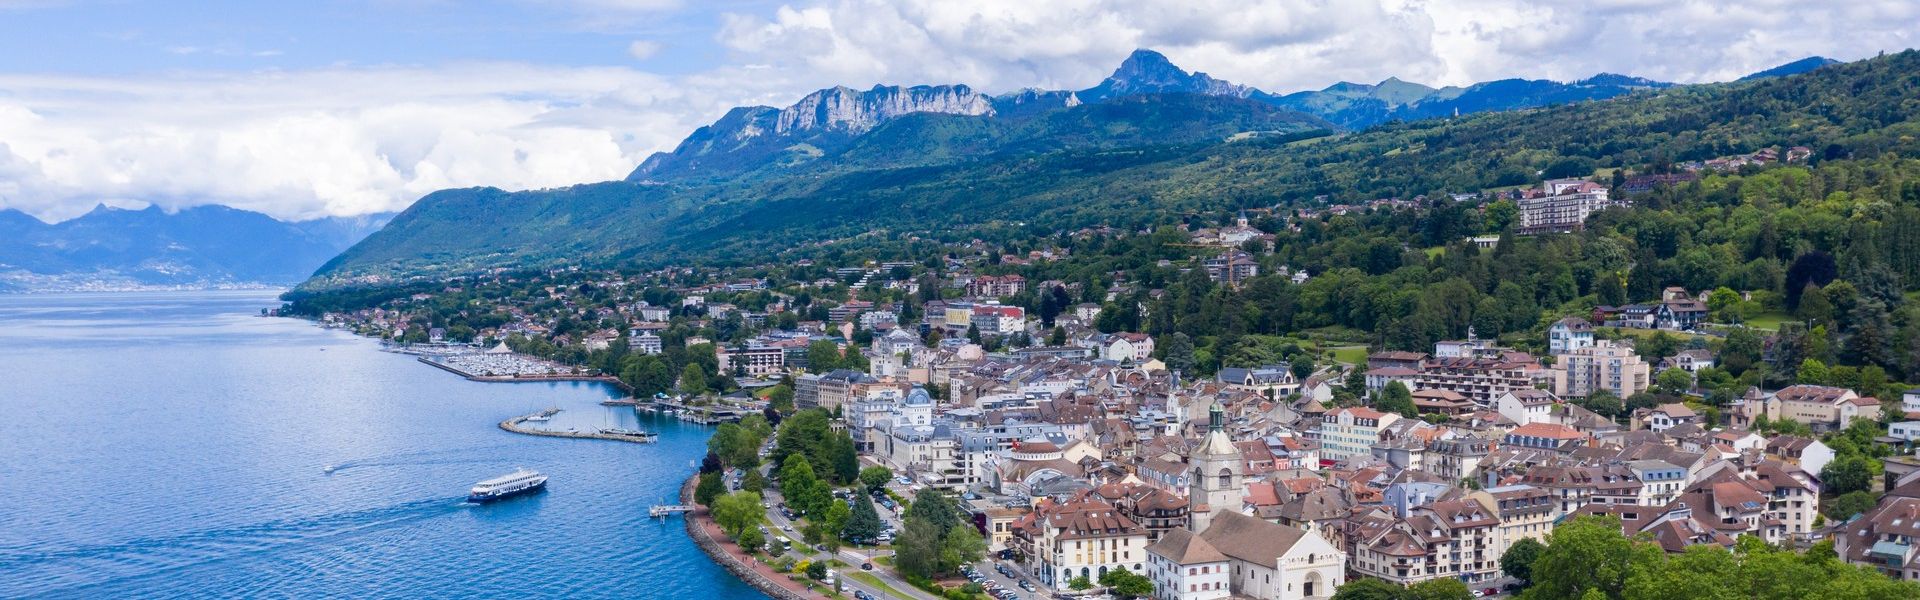 La Haute-Savoie est une région où il fait bon vivre. Entre lacs et montagnes, le Chablais et ses environs offrent un cadre de vie exceptionnel de plus en plus prisé par les Français ou les étrangers qui sont nombreux à s’y installer.</br></br>Si vous souhaitez vendre ou acheter un bien immobilier en Haute-Savoie, l’agence DE CORDIER est idéalement située au cœur d’Evian-les-Bains et vous fera bénéficier de son expertise du marché et sa parfaite connaissance de la région. Nous vous proposons des maisons, appartements, villas, chalets, terrains et programmes neufs dans l’ensemble des villes du 74.